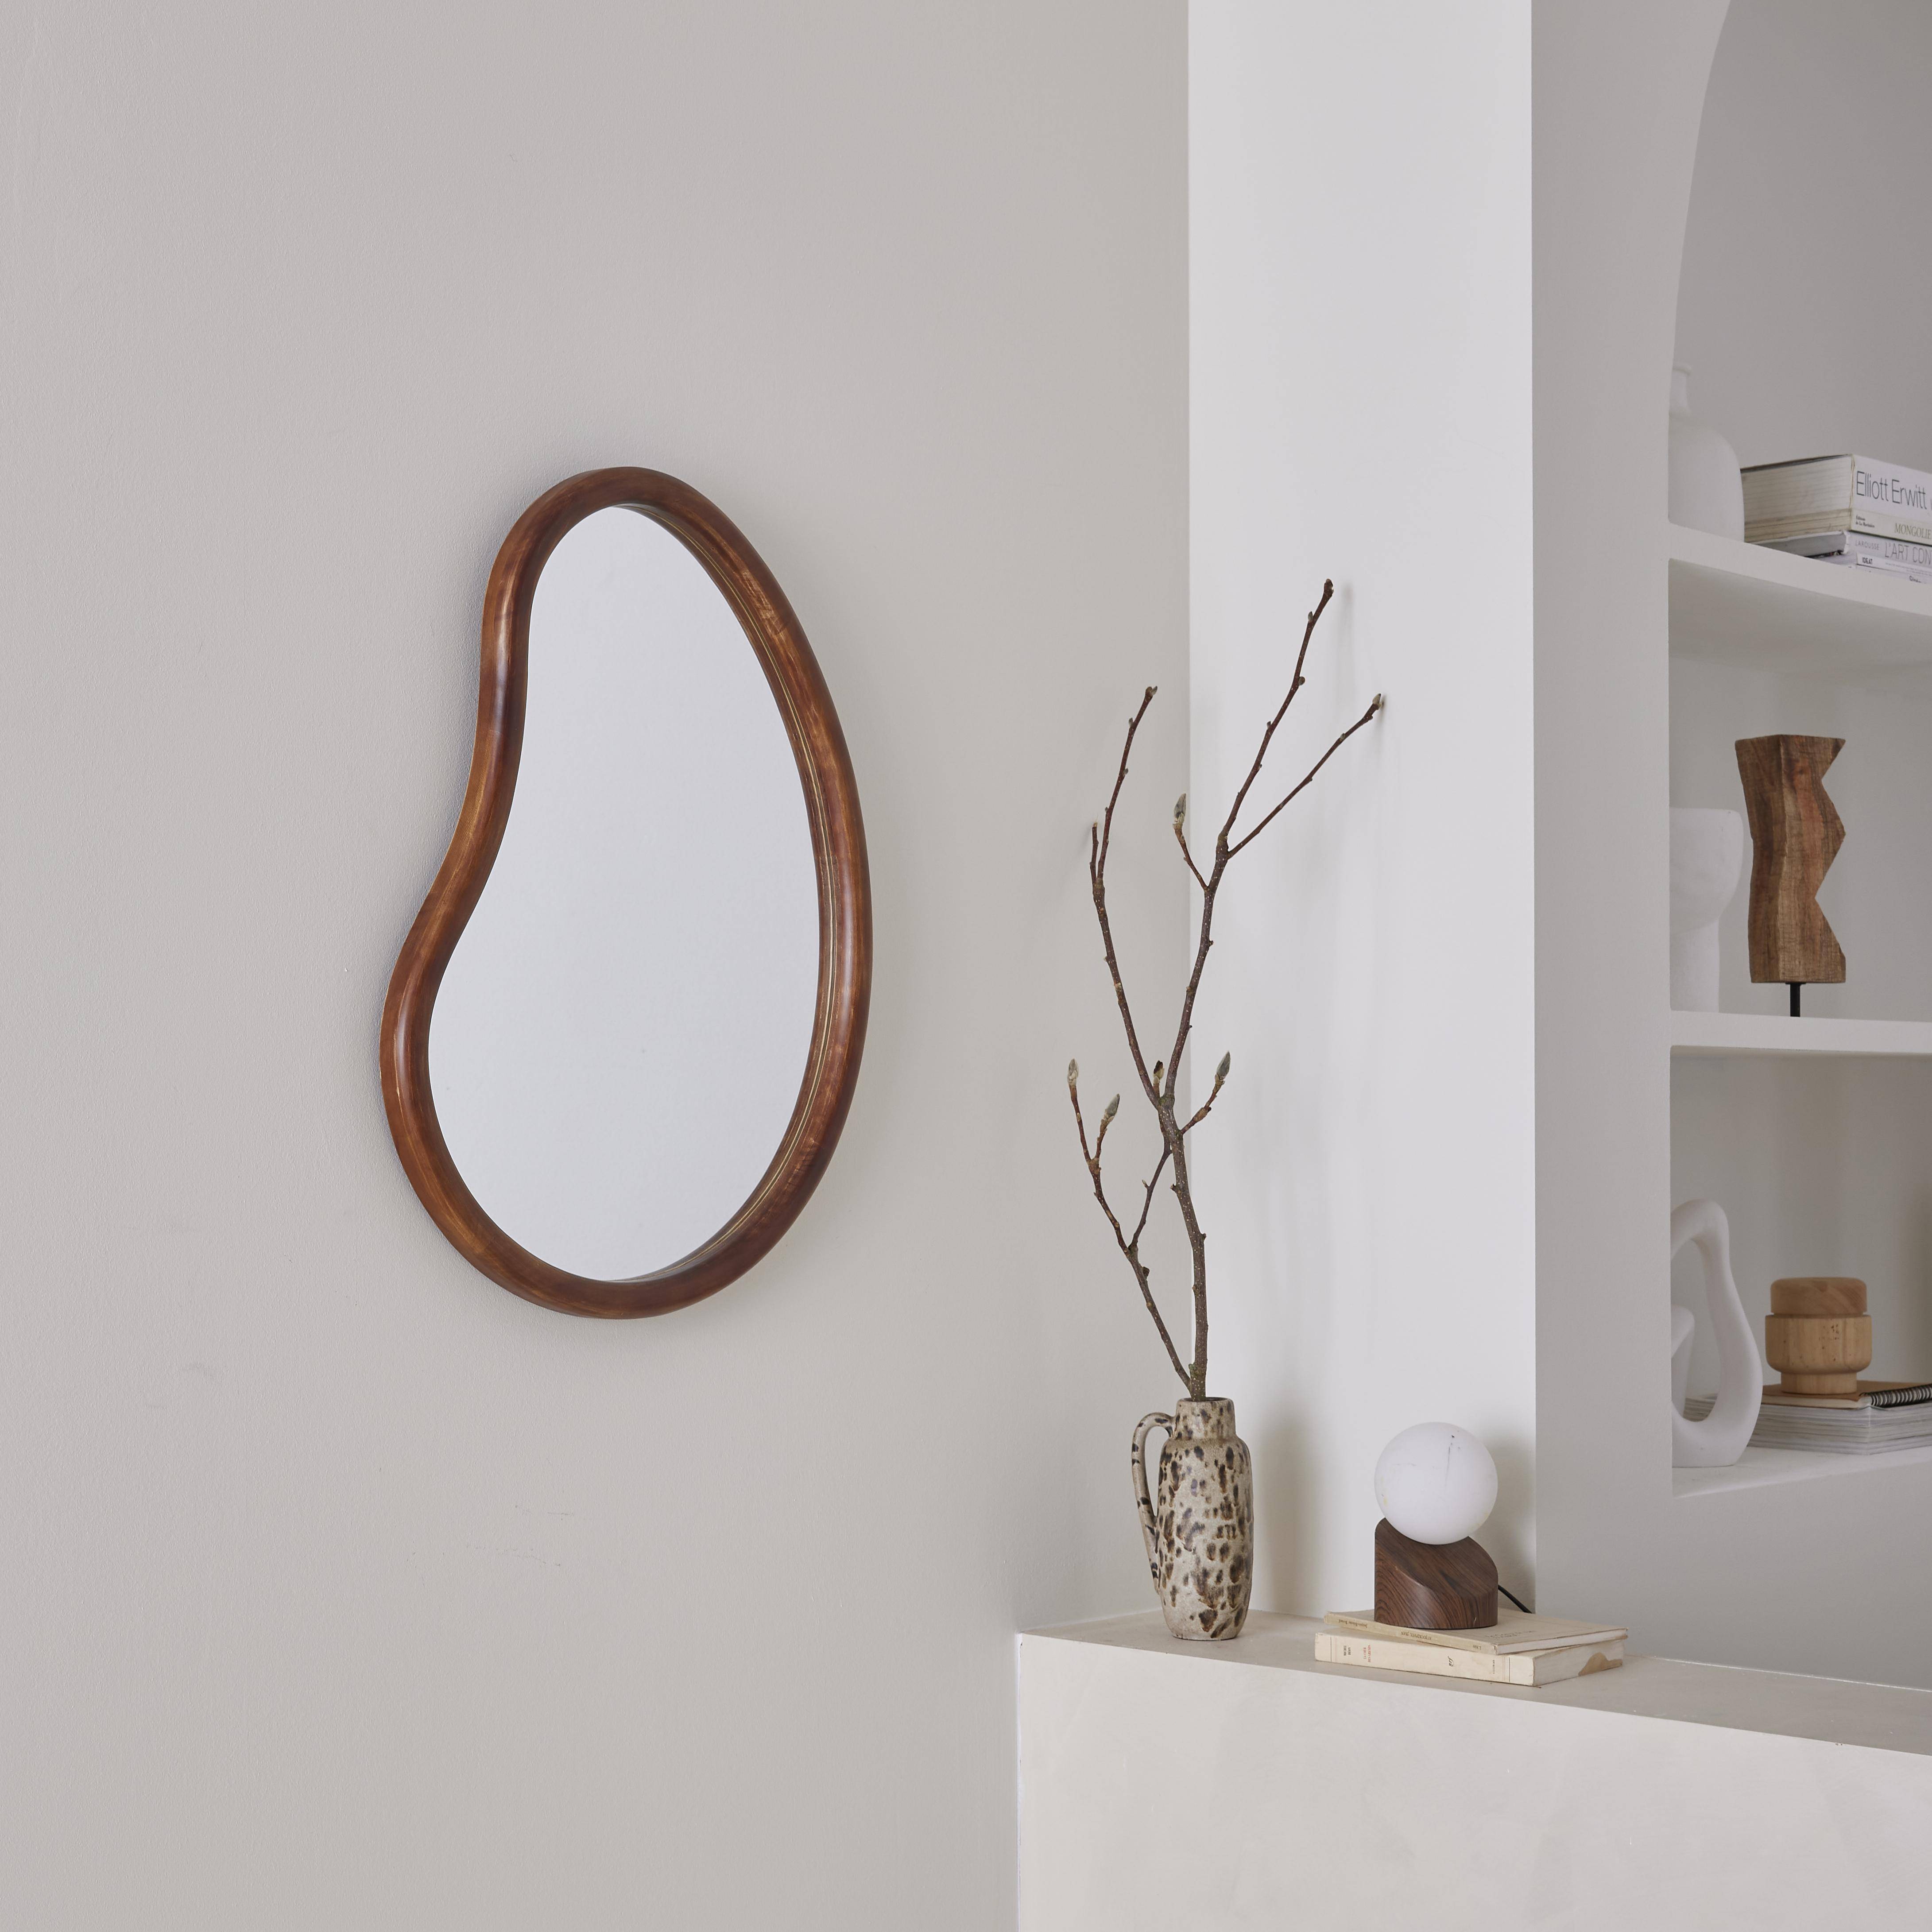 Organischer Spiegel aus Tannenholz 65cm, 3cm dick, nussbaumfarben, ideal für Eingang, Schlafzimmer oder Badezimmer.,sweeek,Photo1